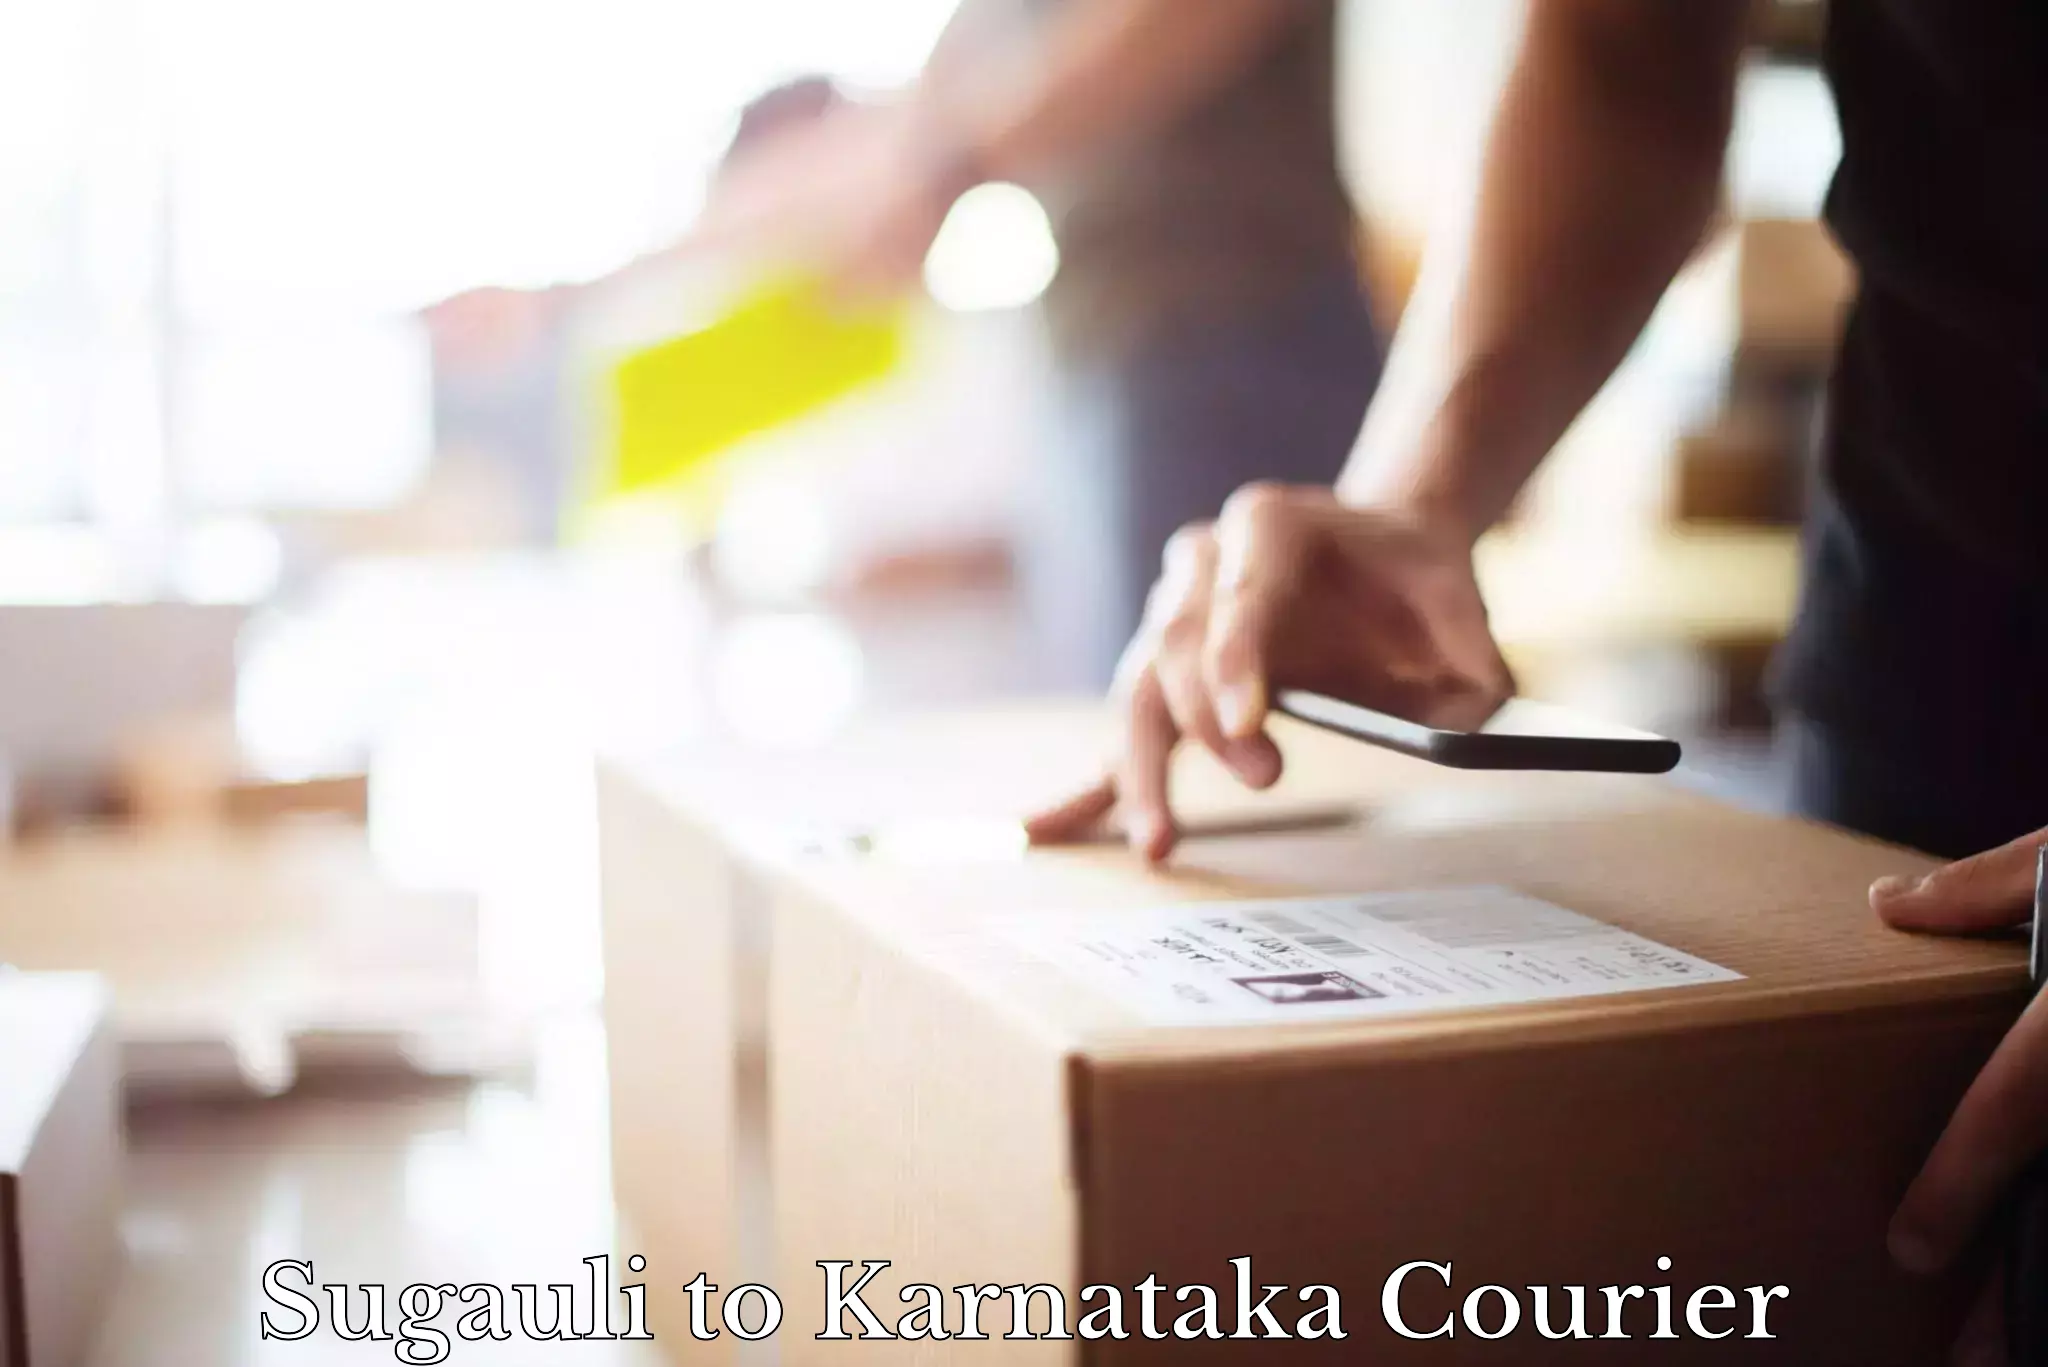 Special handling courier Sugauli to Jayanagar